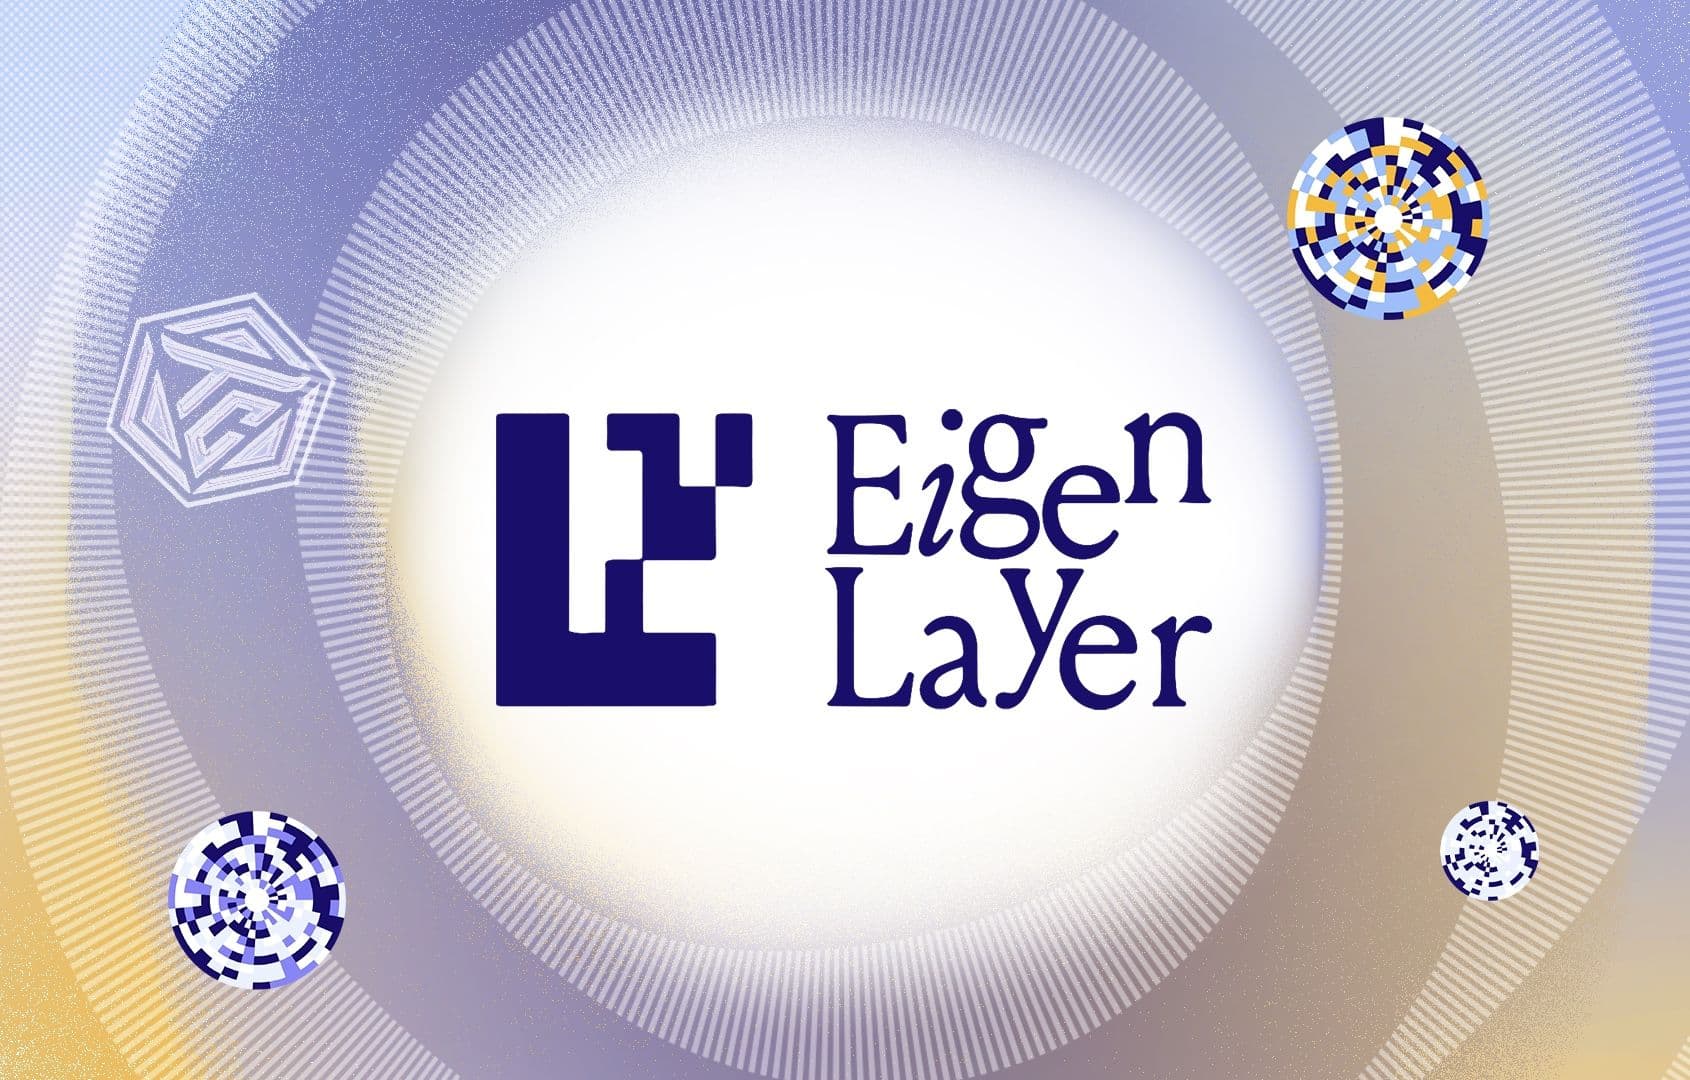 EigenLayer là gì? Dự án restaking có khả năng cách mạng hóa Ethereum